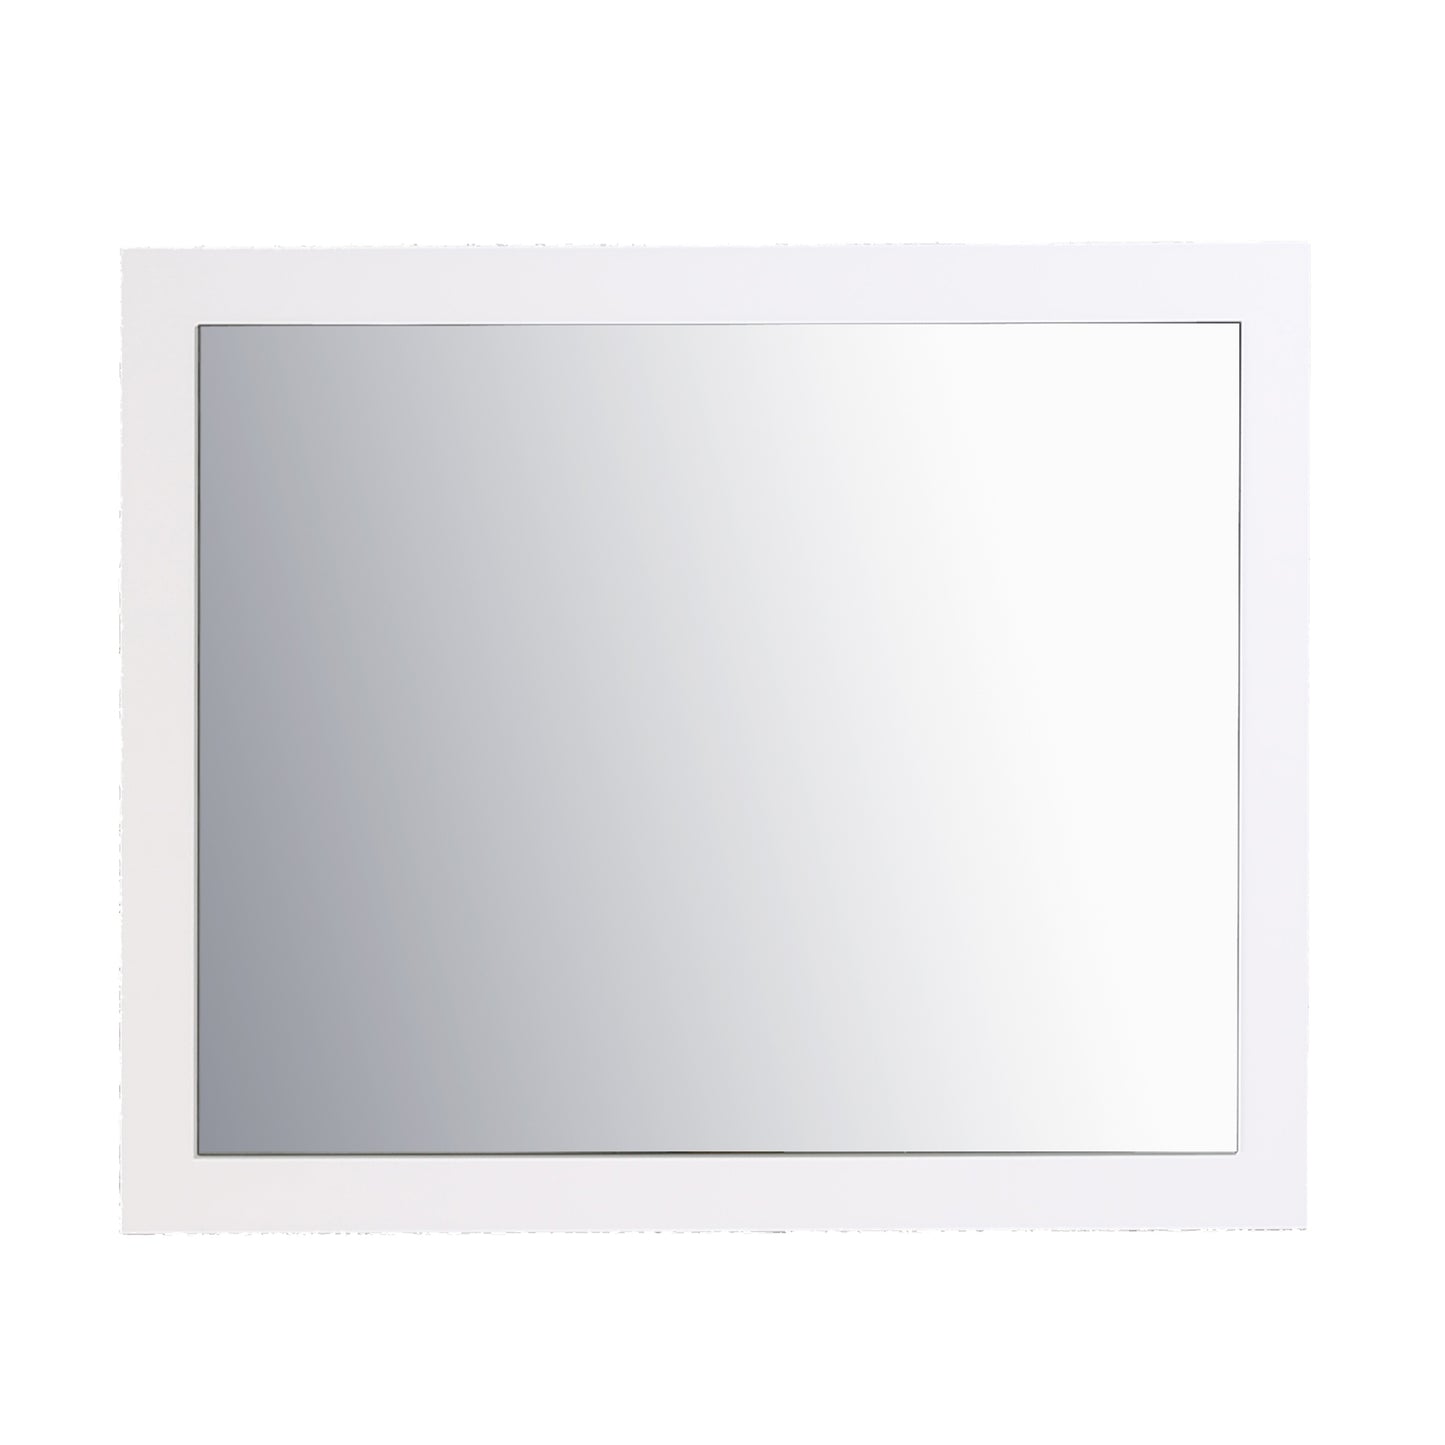 Eviva Sun 36" Glossy White Full Framed Bathroom Wall Mirror